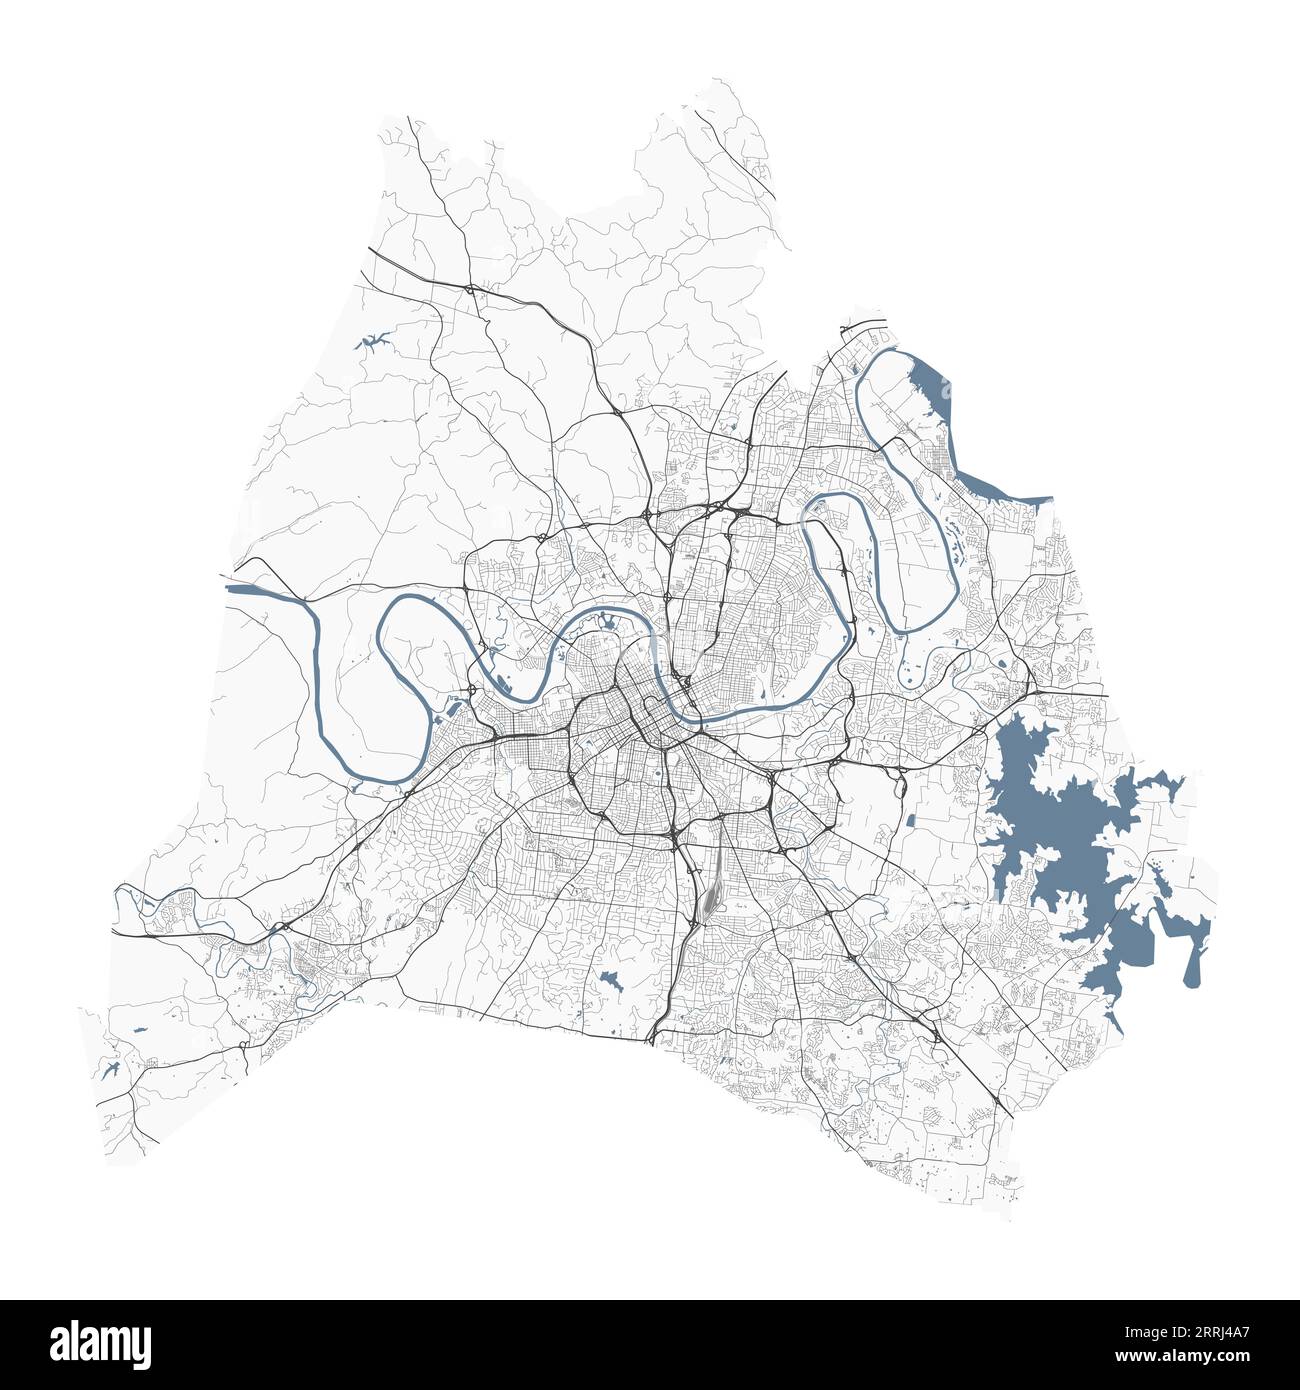 Mappa di Nashville, città americana. Mappa dell'area amministrativa comunale con fiumi e strade, parchi e ferrovie. Illustrazione vettoriale. Illustrazione Vettoriale